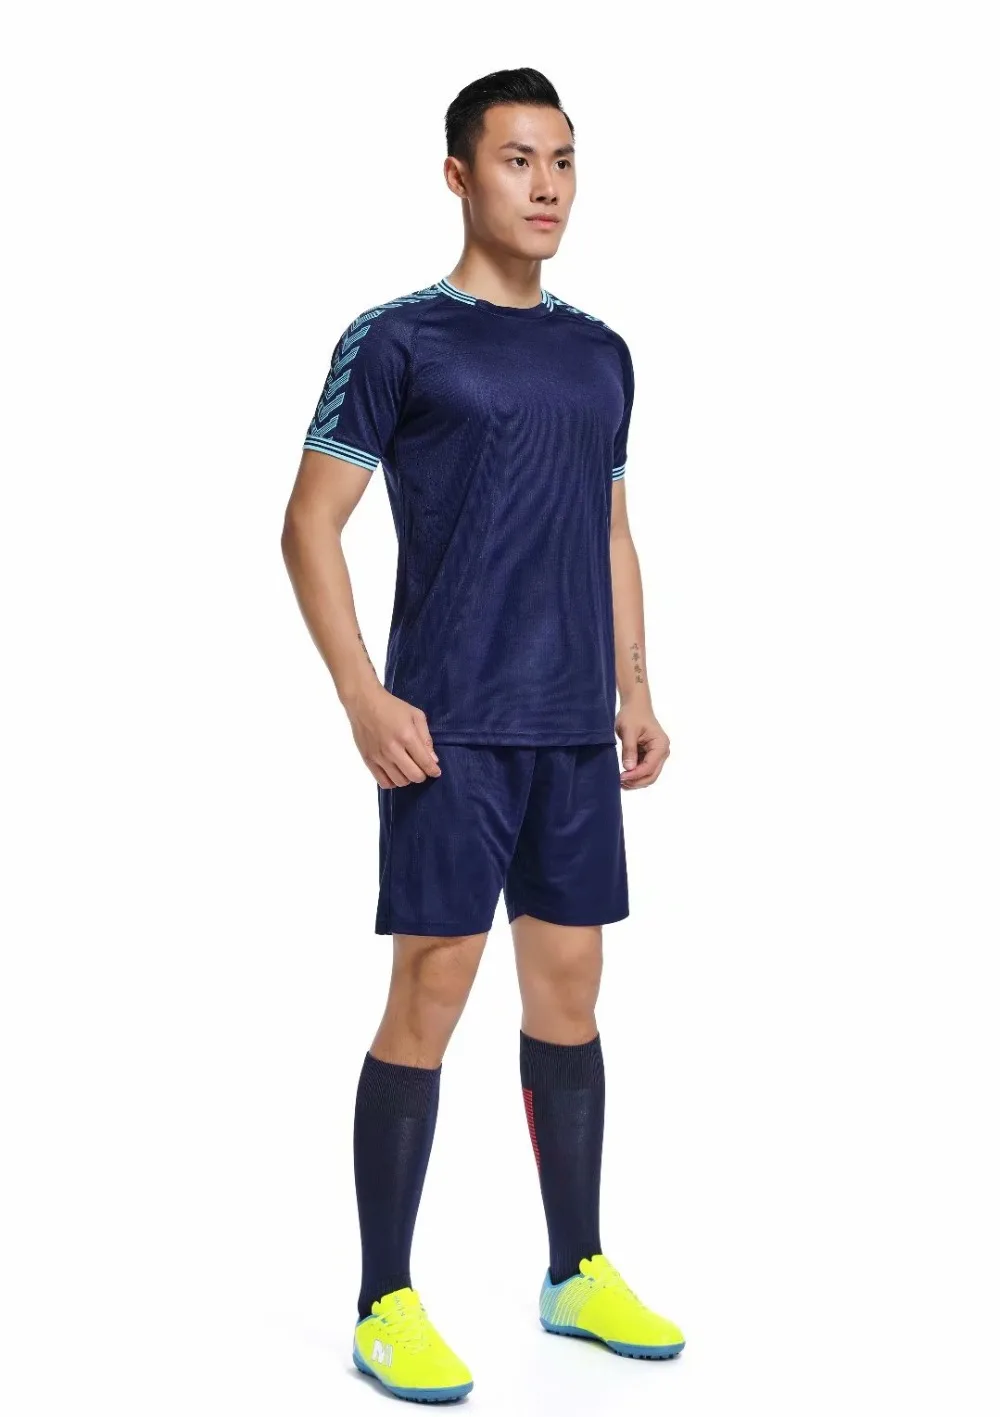 Летняя футбольная тренировочная форма для взрослых мальчиков и девочек, индивидуальный футбольный набор DIY 5 цветов, высокое качество, футбольная рубашка производитель